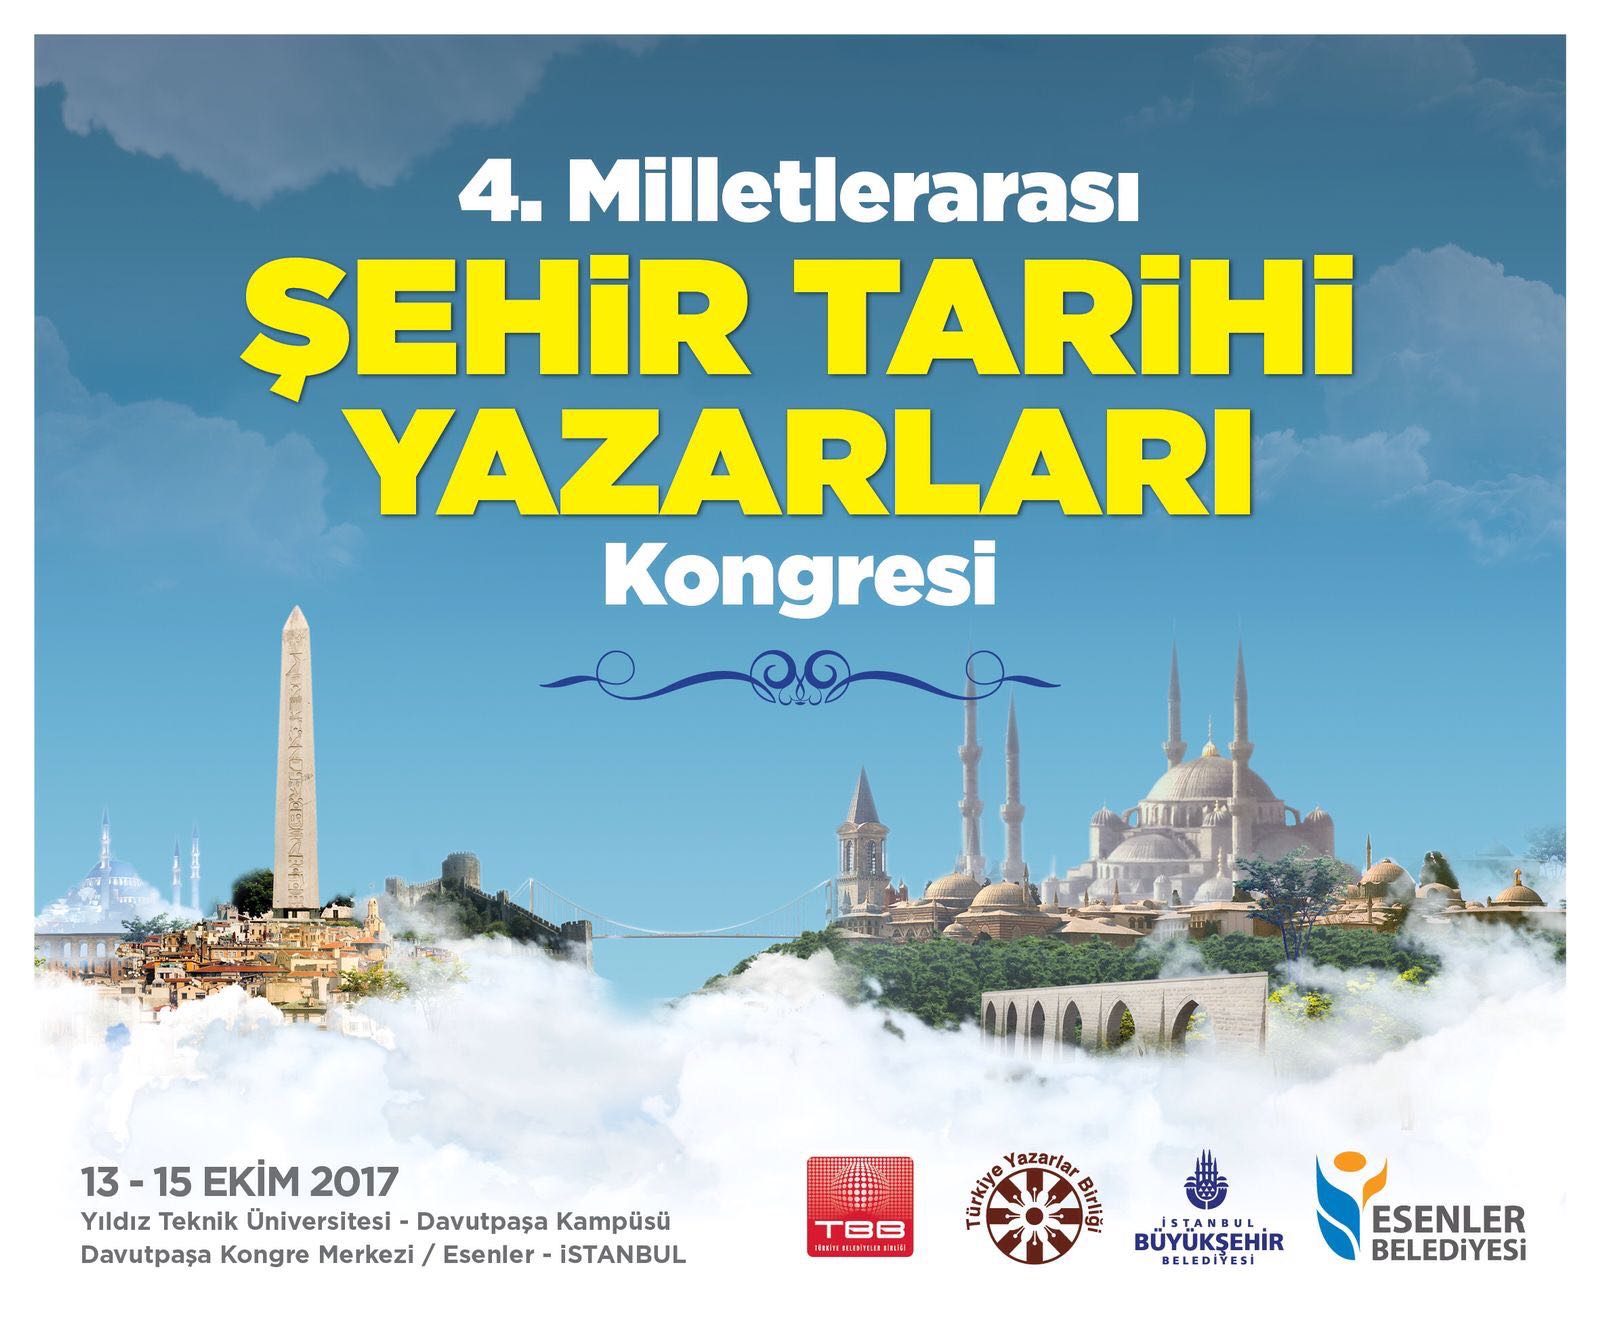 4. Şehir Tarihi Yazarları Kongresi İstanbul'da Başlıyor!